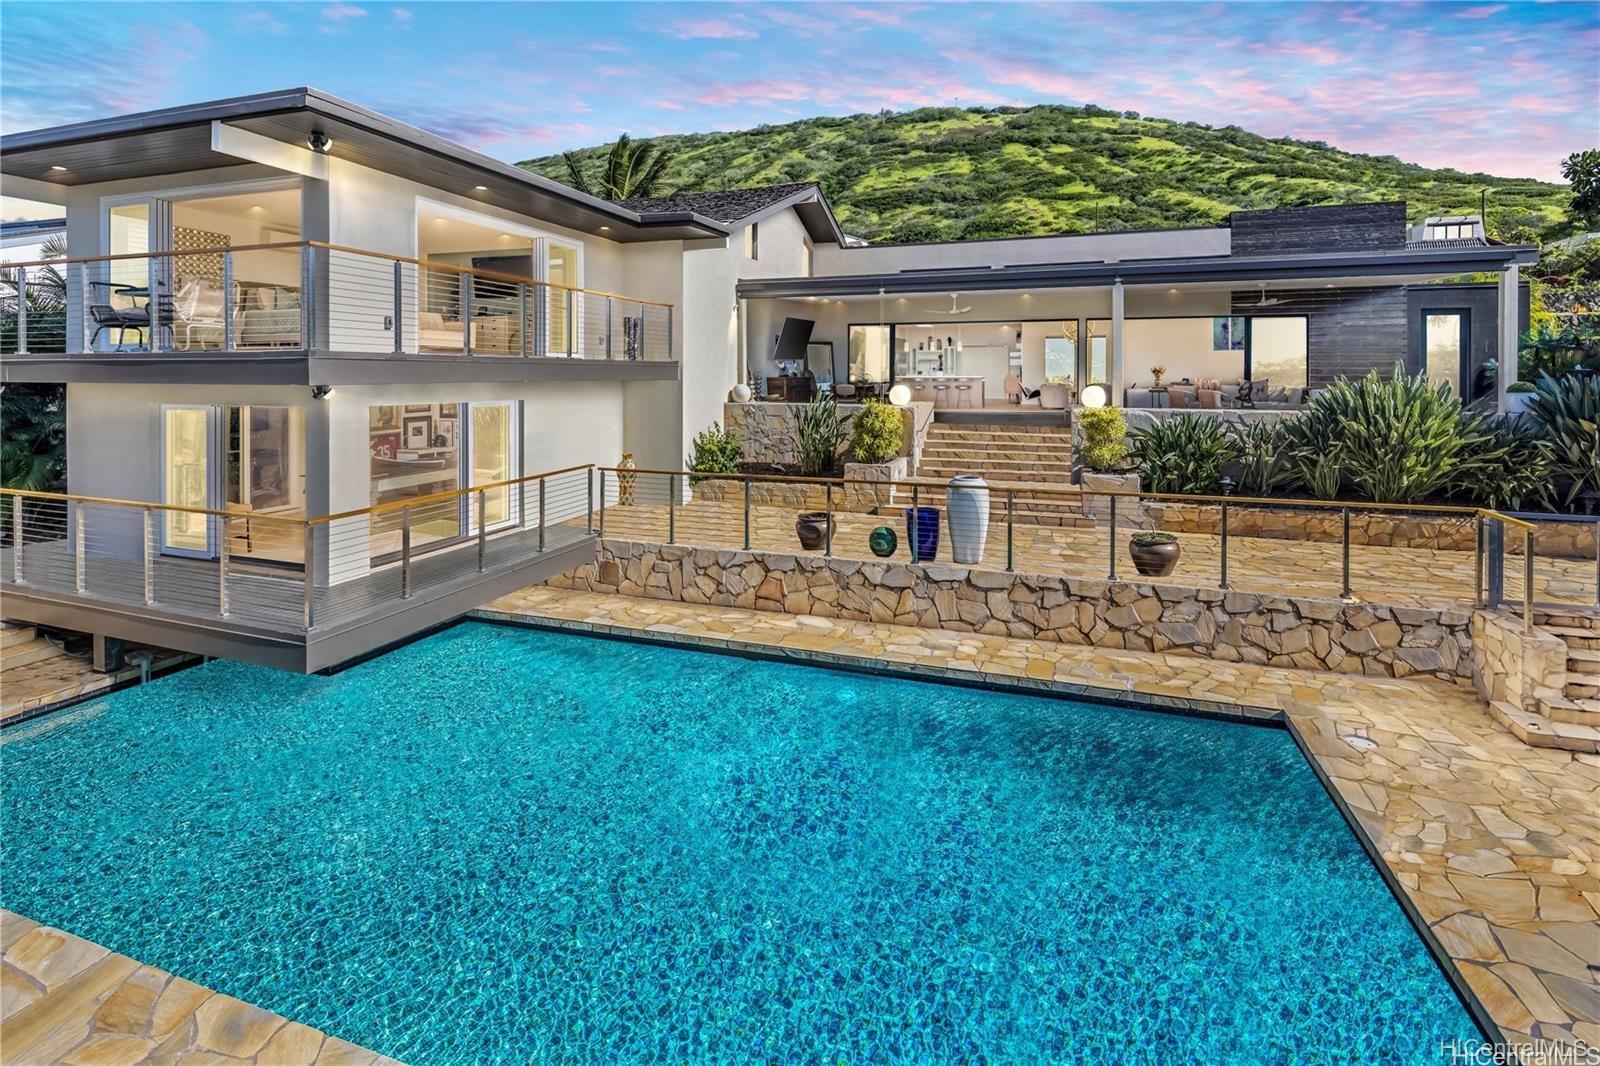 Hawaii Kai real estate & homes for sale - Oahu | Hawaii House